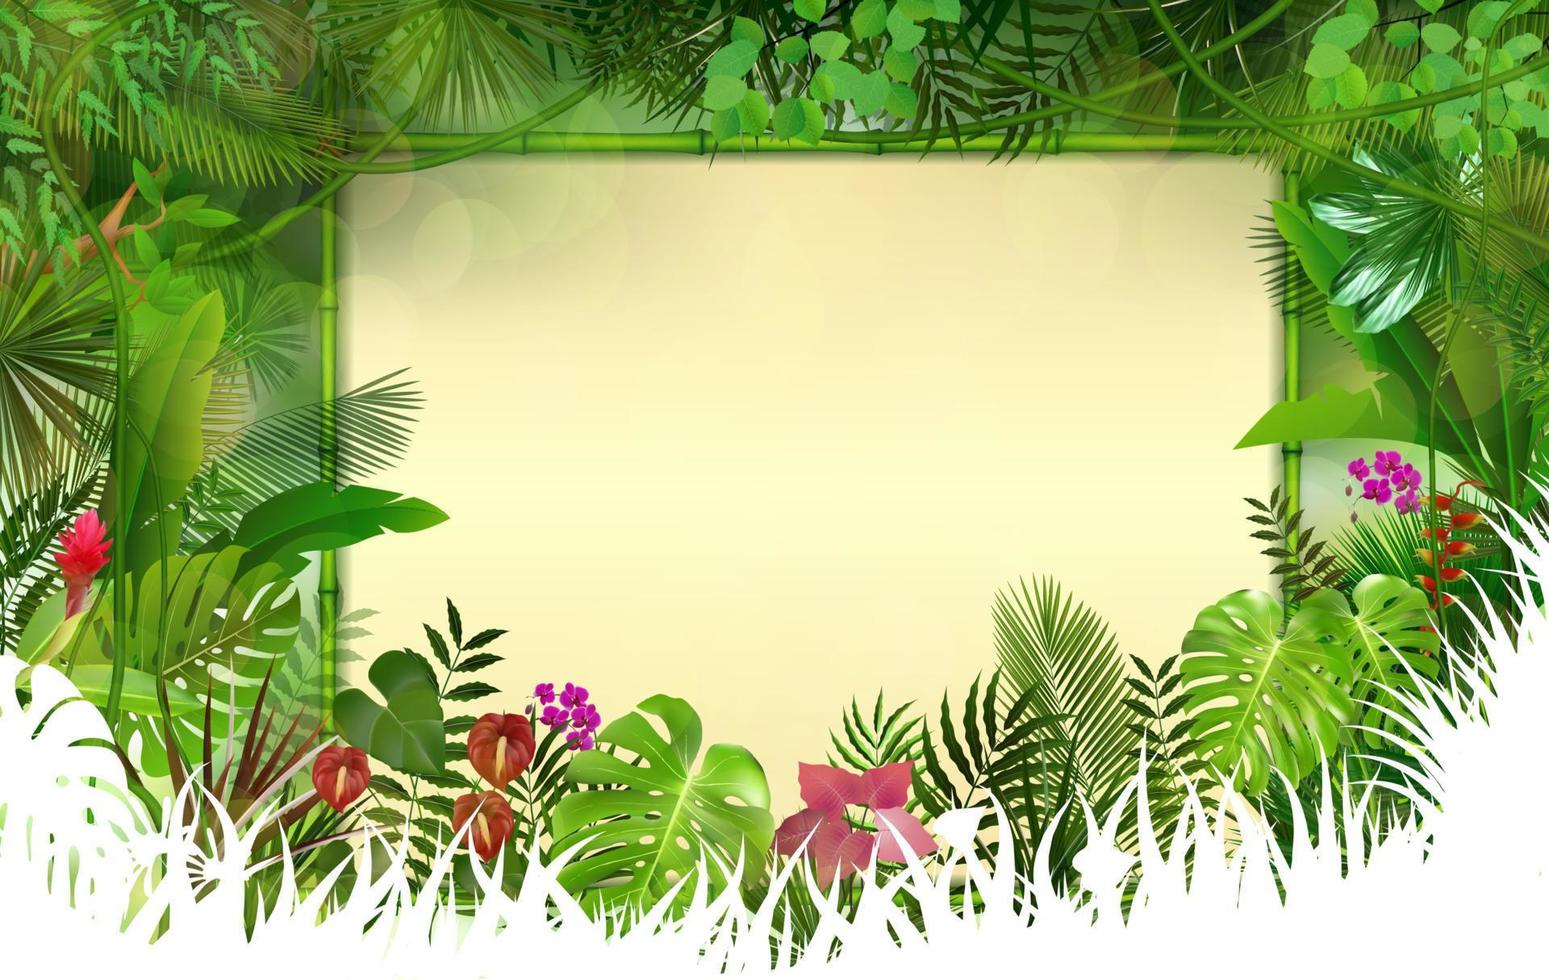 fundo tropical com moldura floral retângulo no conceito bamboo.vector vetor